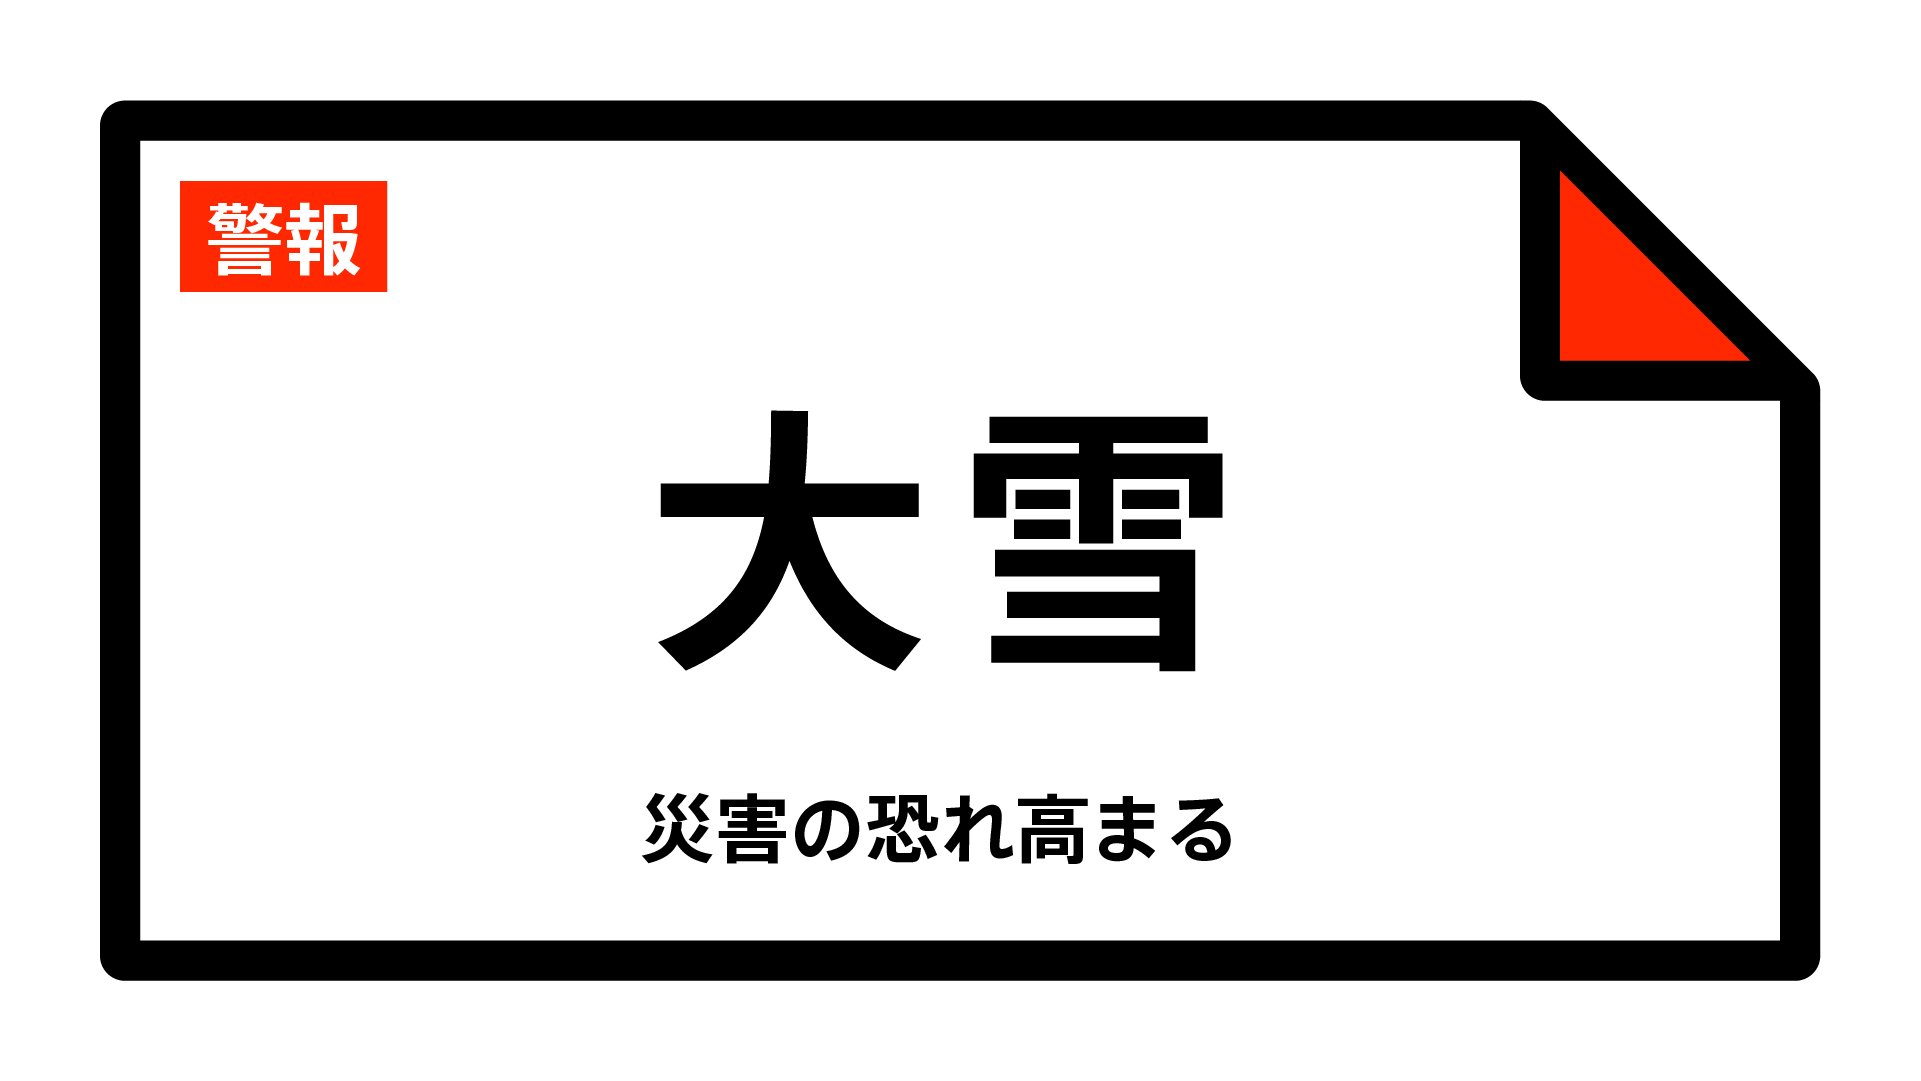 【大雪警報】鳥取県・鳥取市北部、鳥取市南部、岩美町、若桜町、八頭町に発表